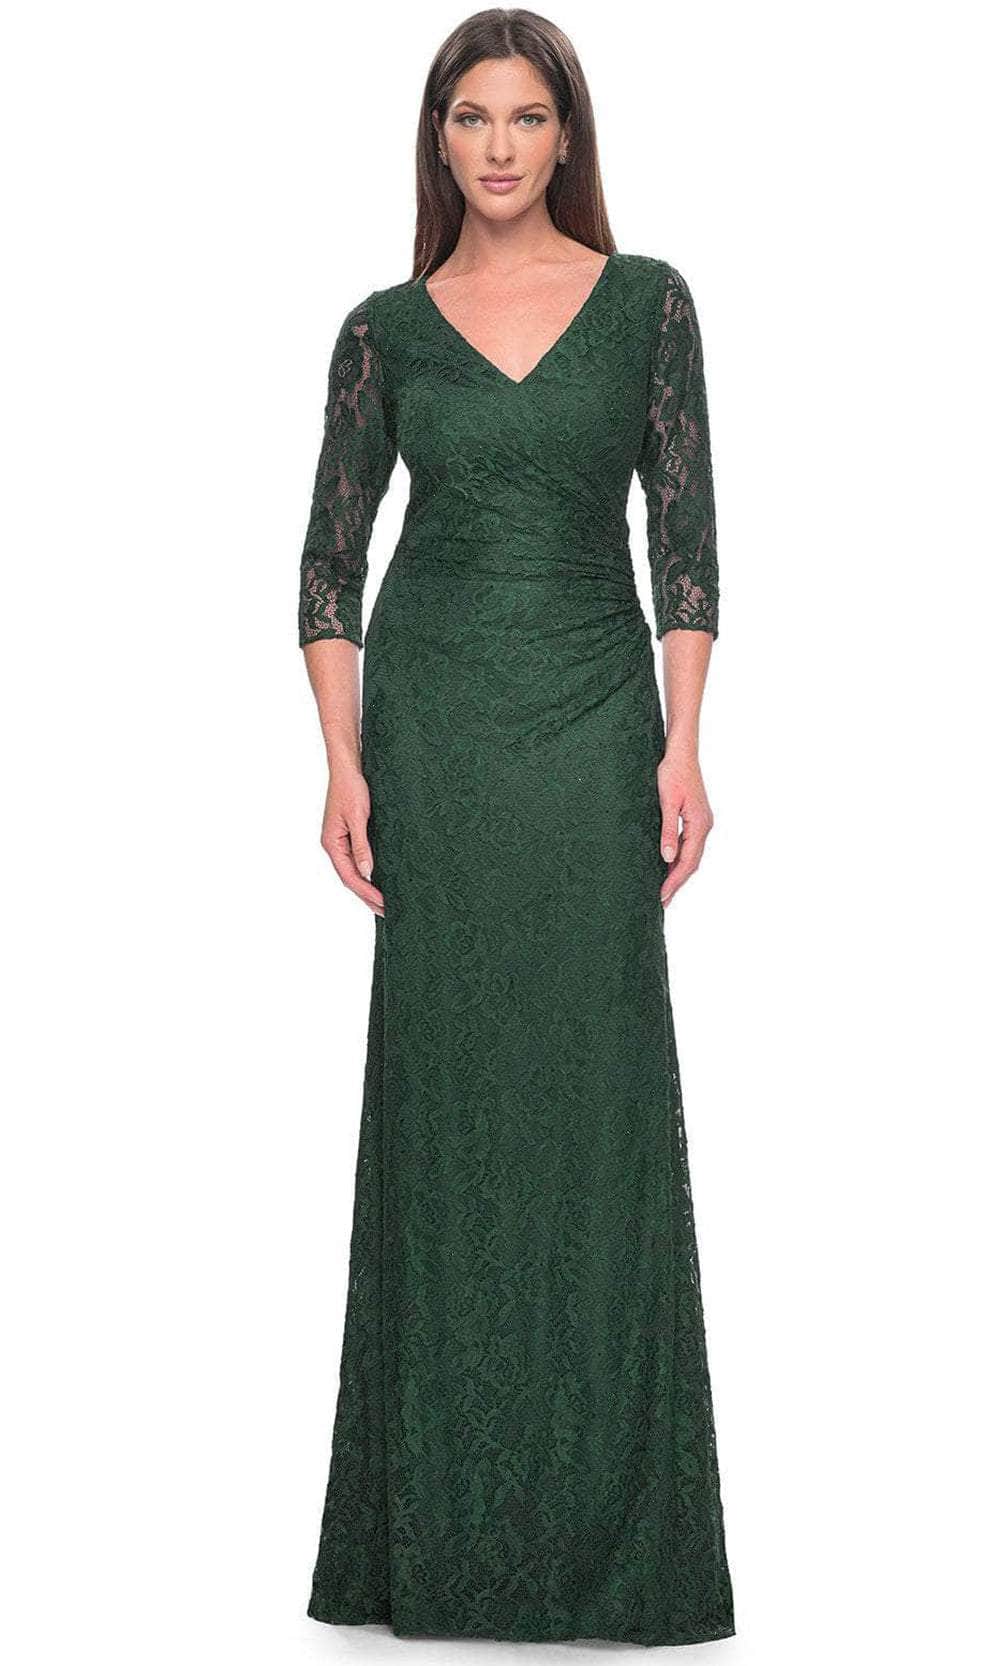 La Femme 30379 - Floral Lace Formal Dress Evening Dresses 4 / Dark Emerald